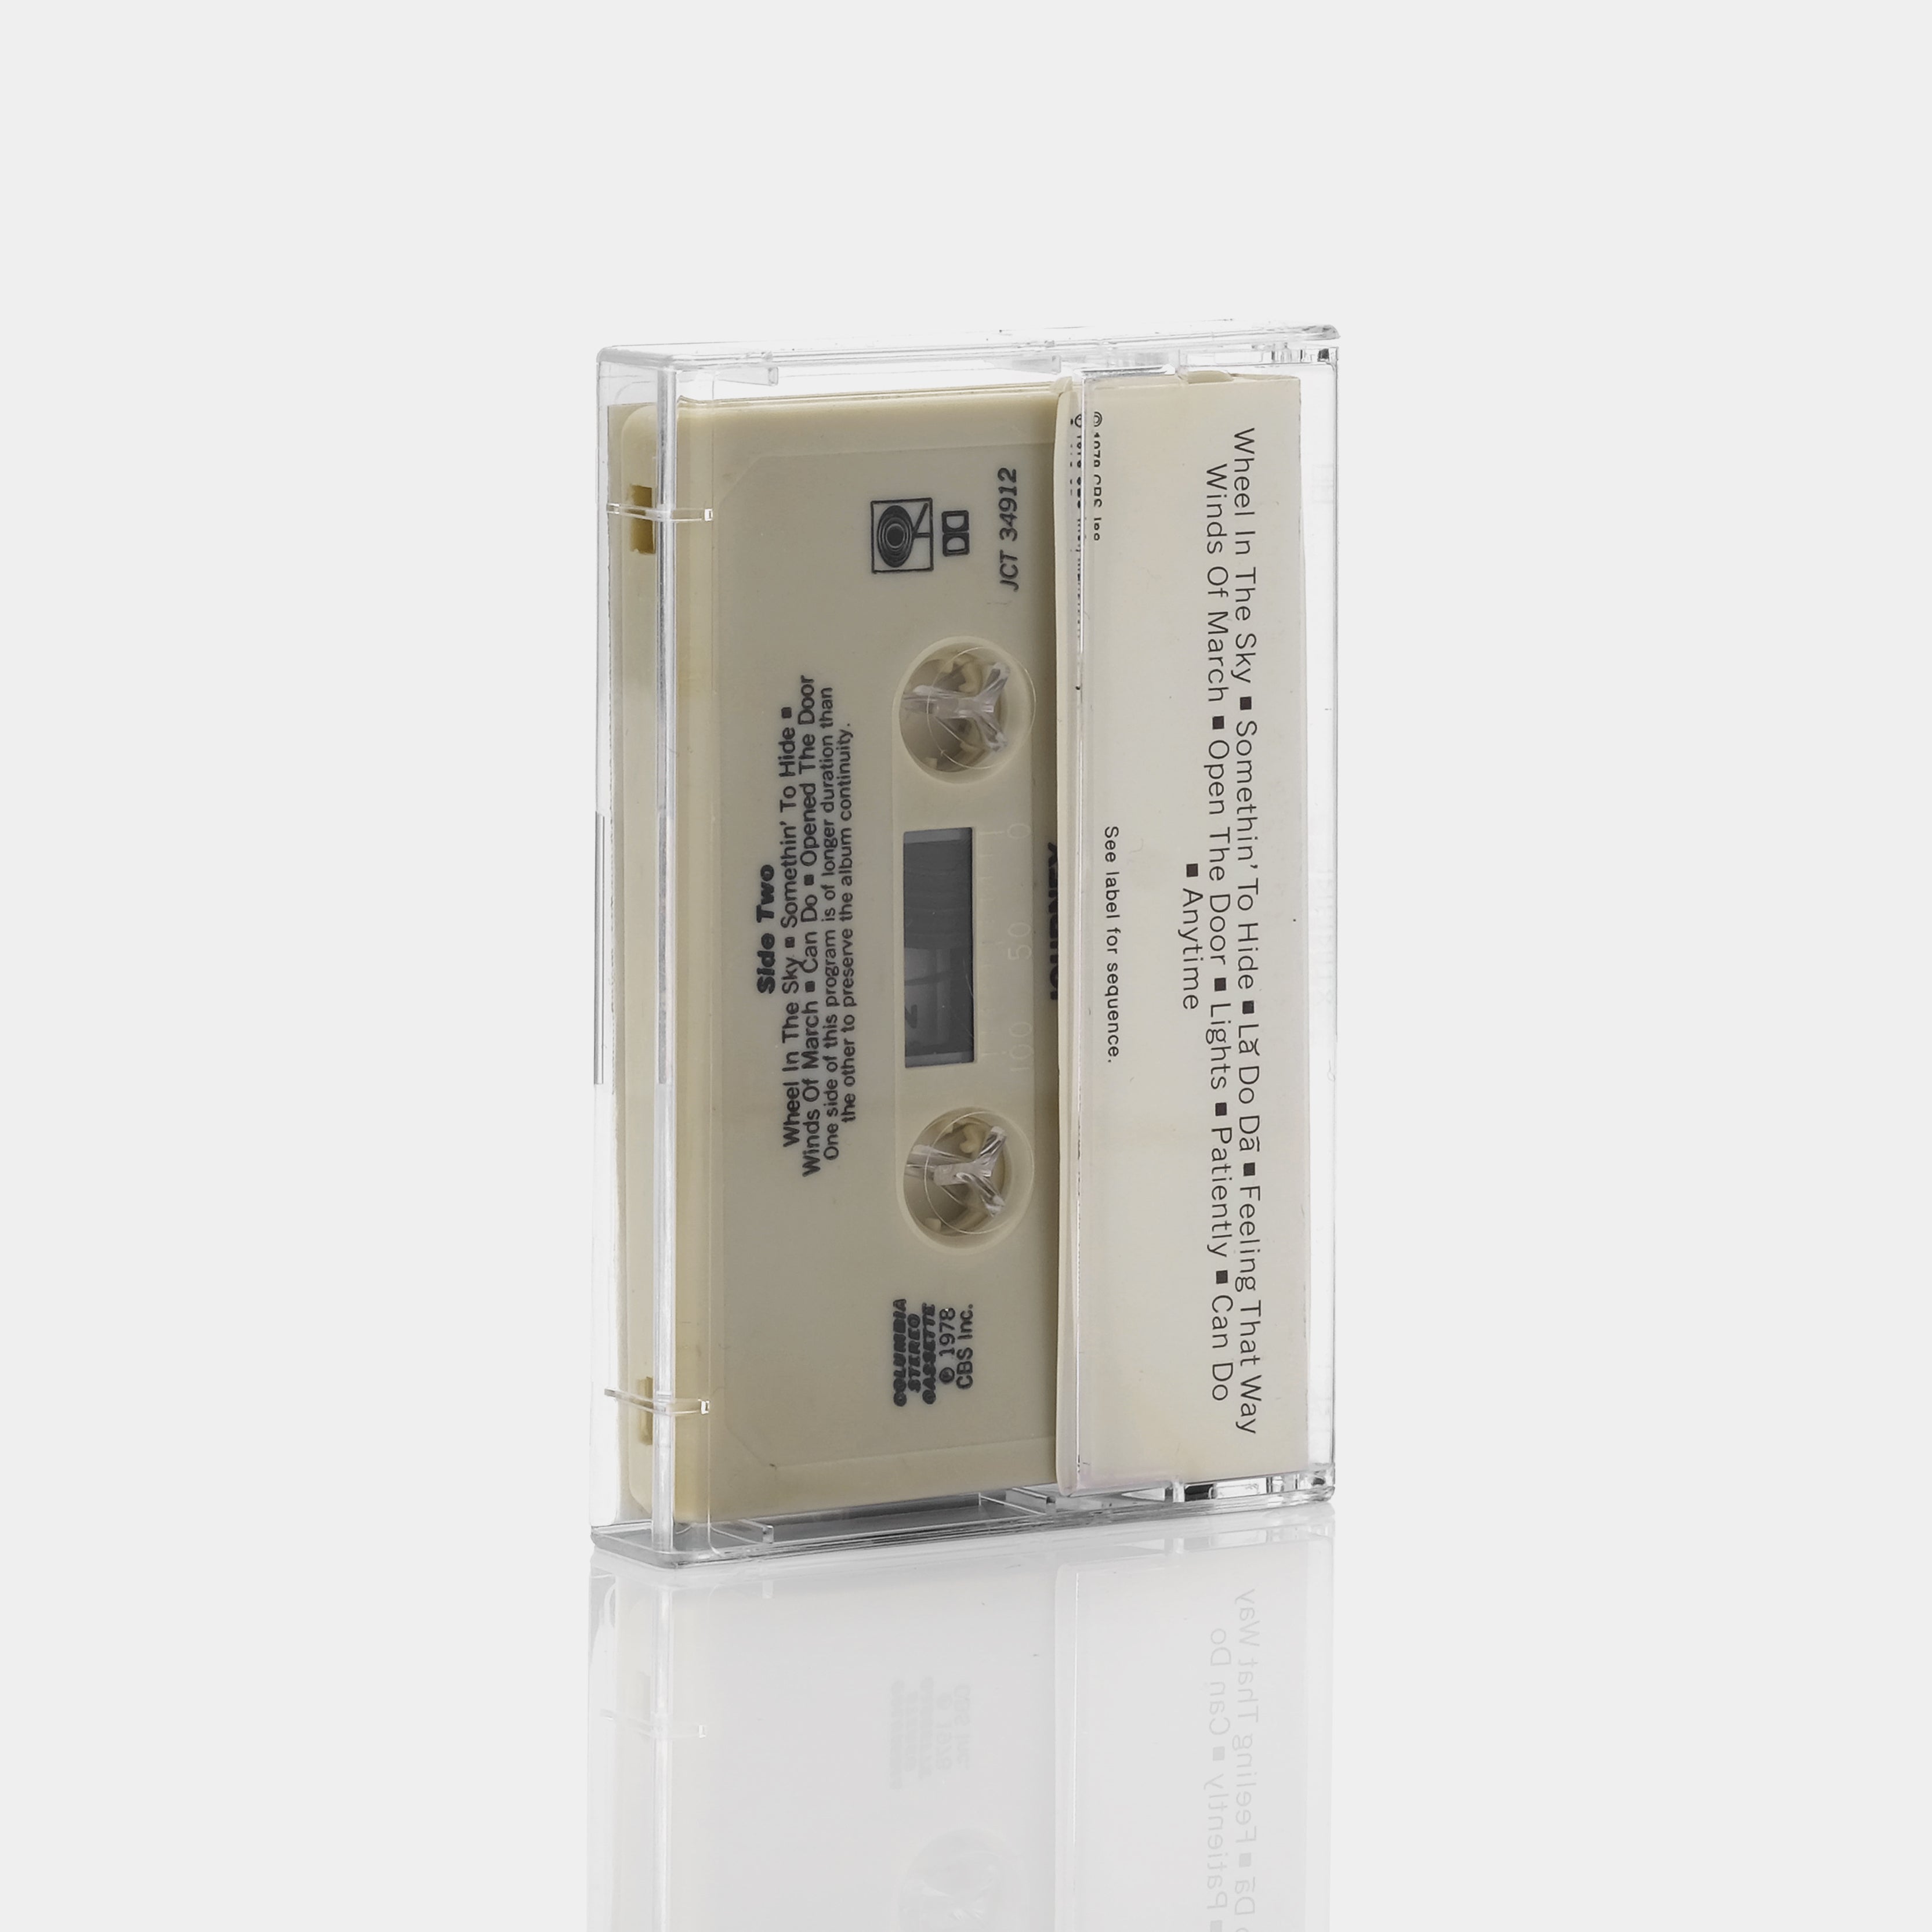 Journey - Infinity Cassette Tape